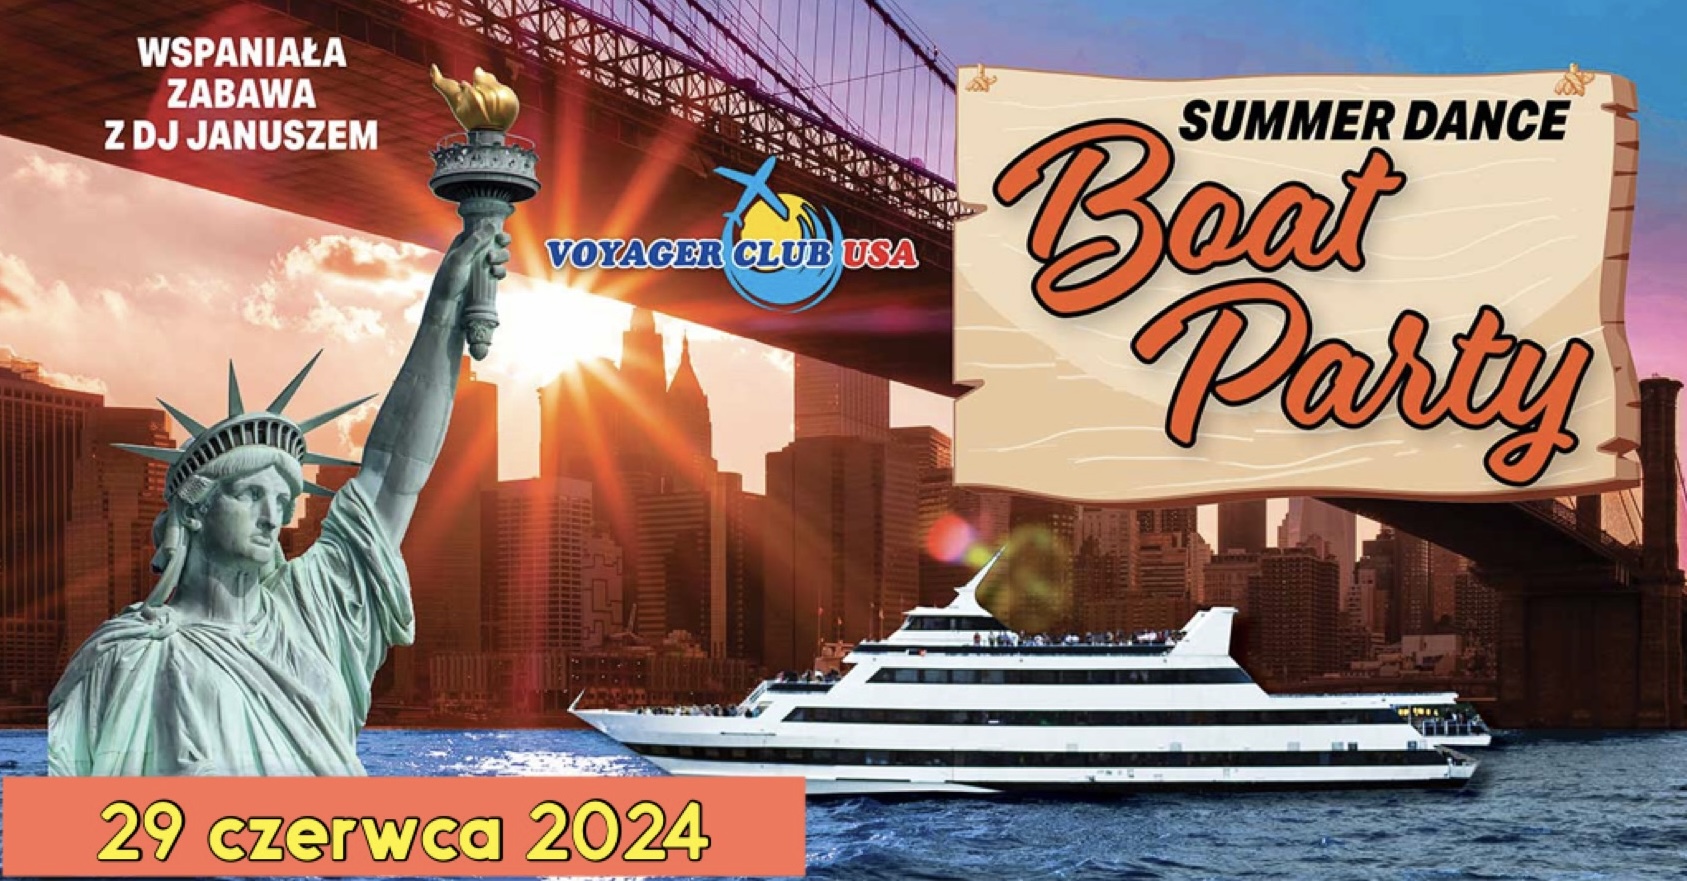 Voyager Club USA w Nowym Jorku zaprasza na Summer Dance Boat Party 2024